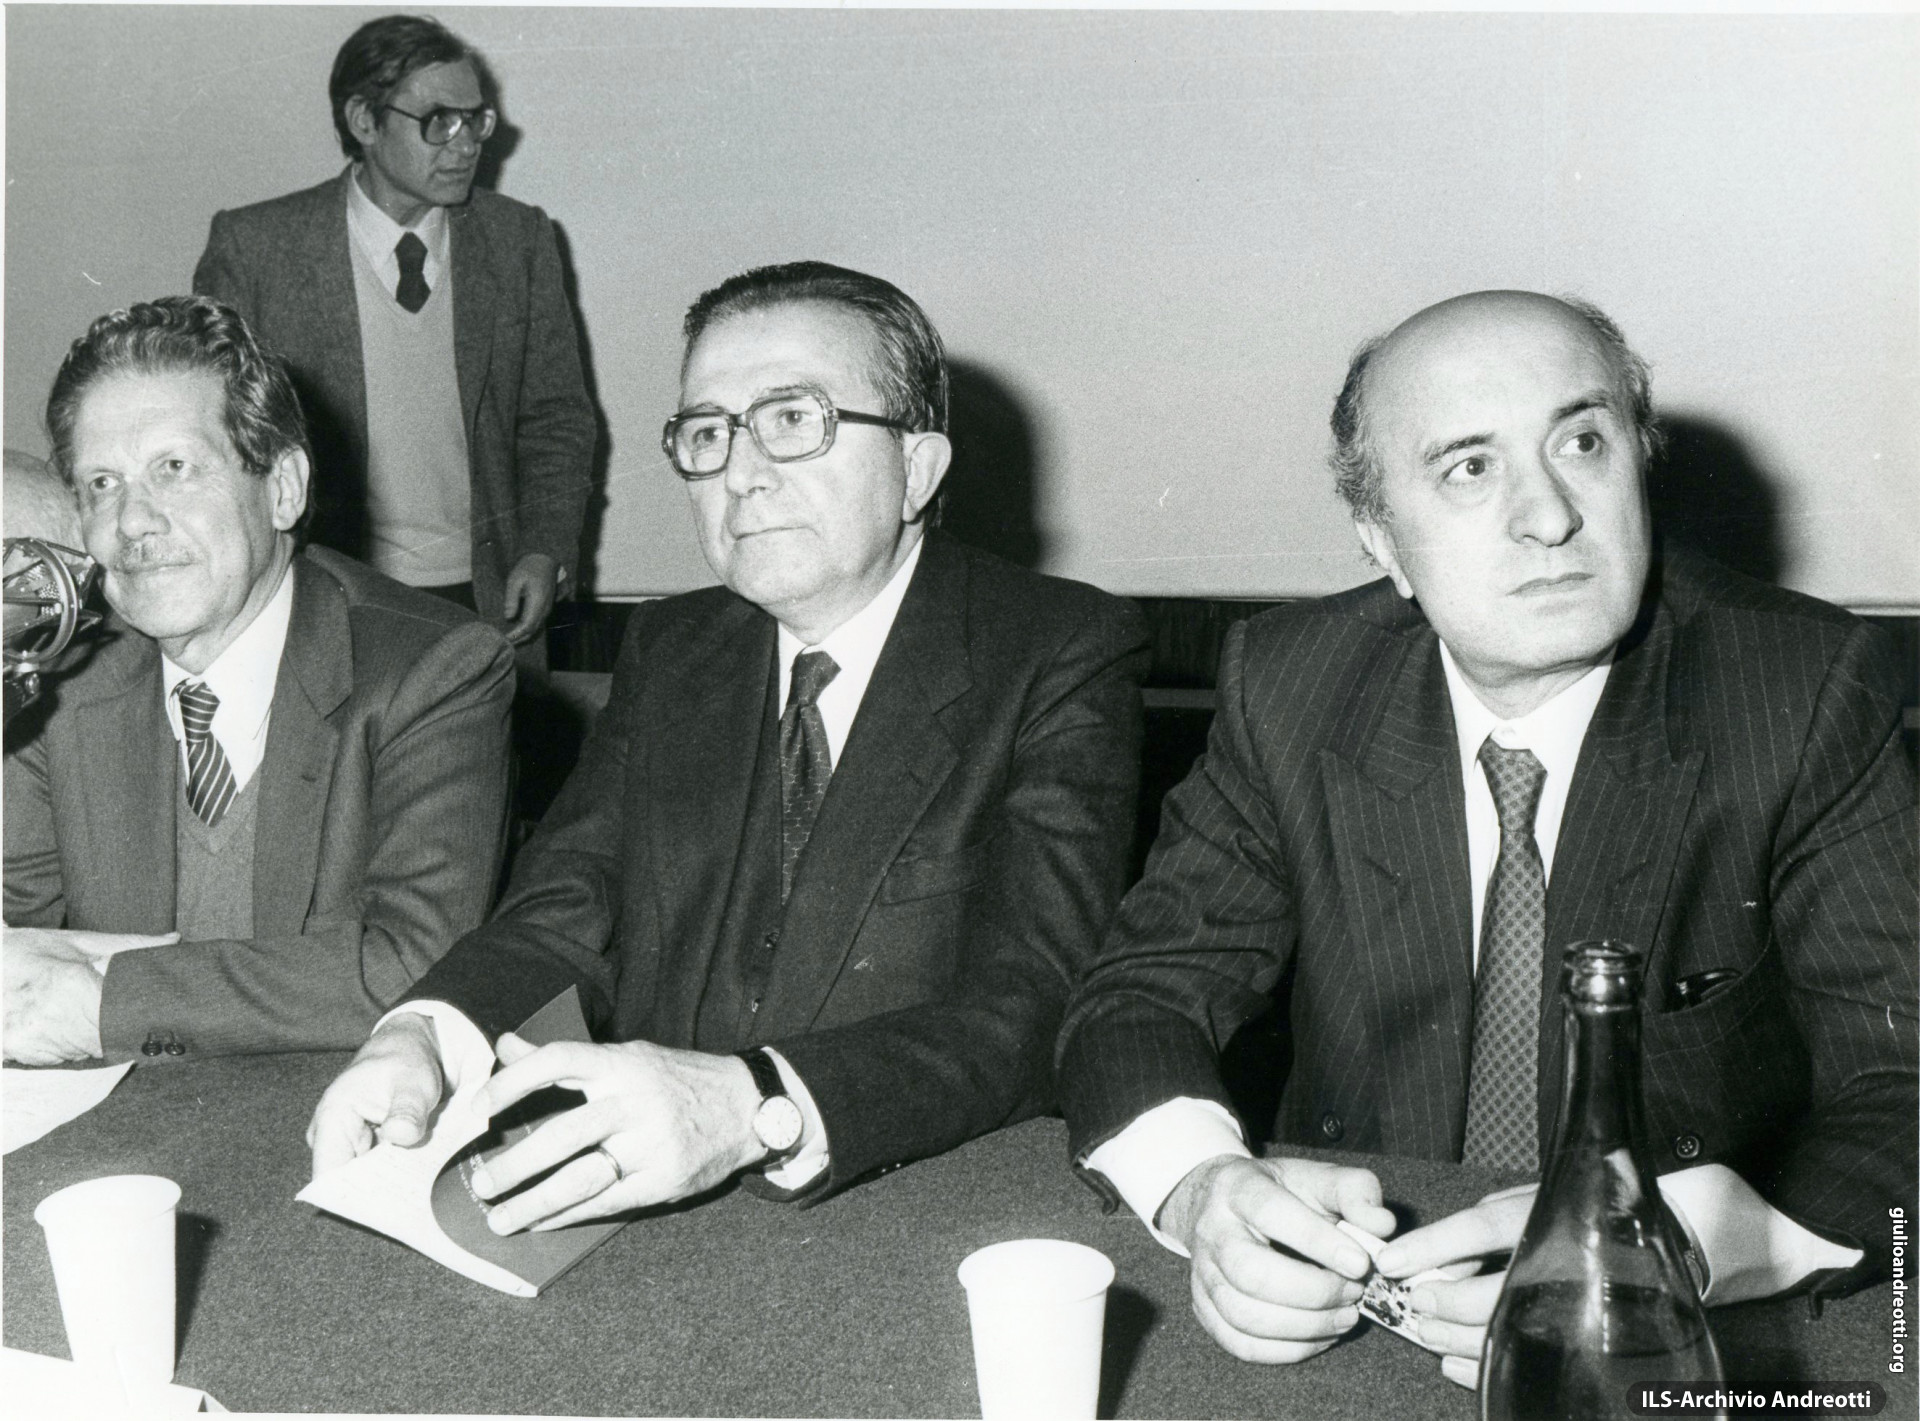 Flaminio Piccoli, Giulio Andreotti e Ciriaco De Mita, nel 1983.